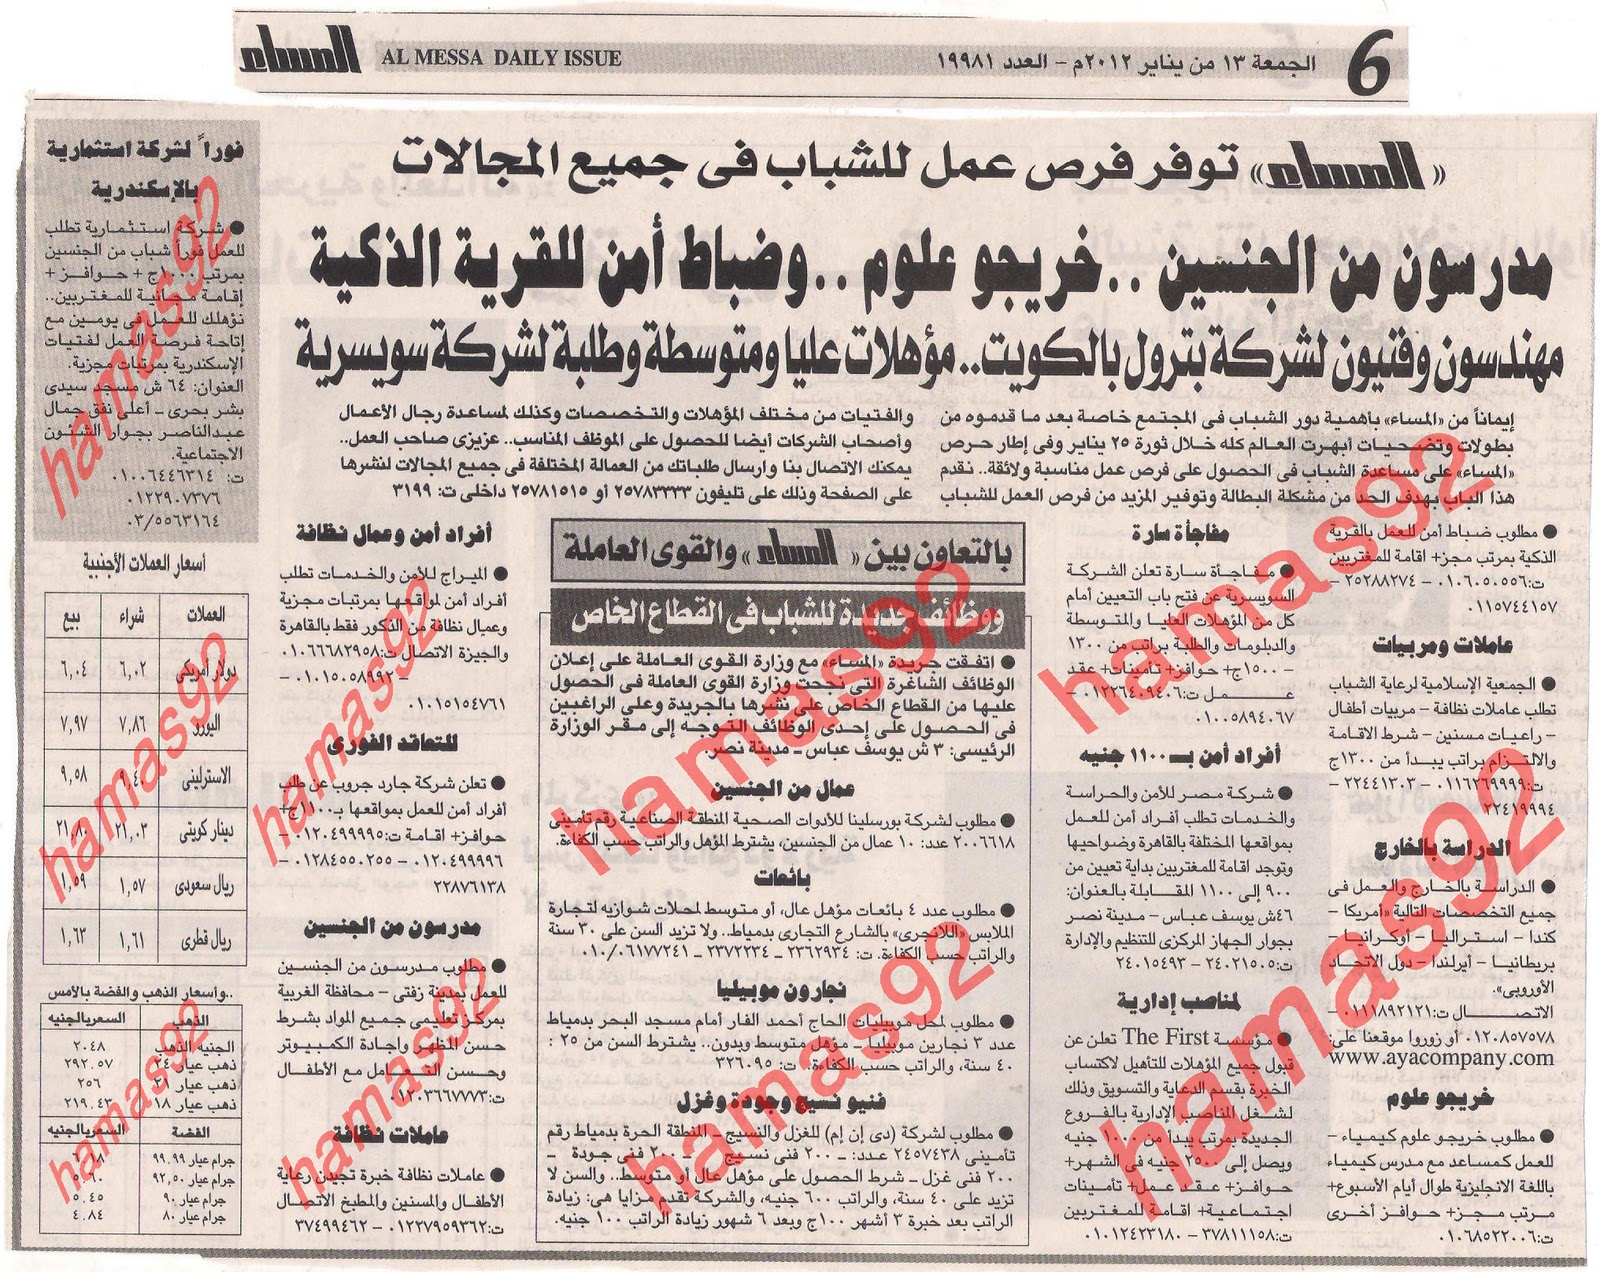 اعلانات وظائف خالية من جريدة المساء الجمعة 13 يناير 2012  Picture+018